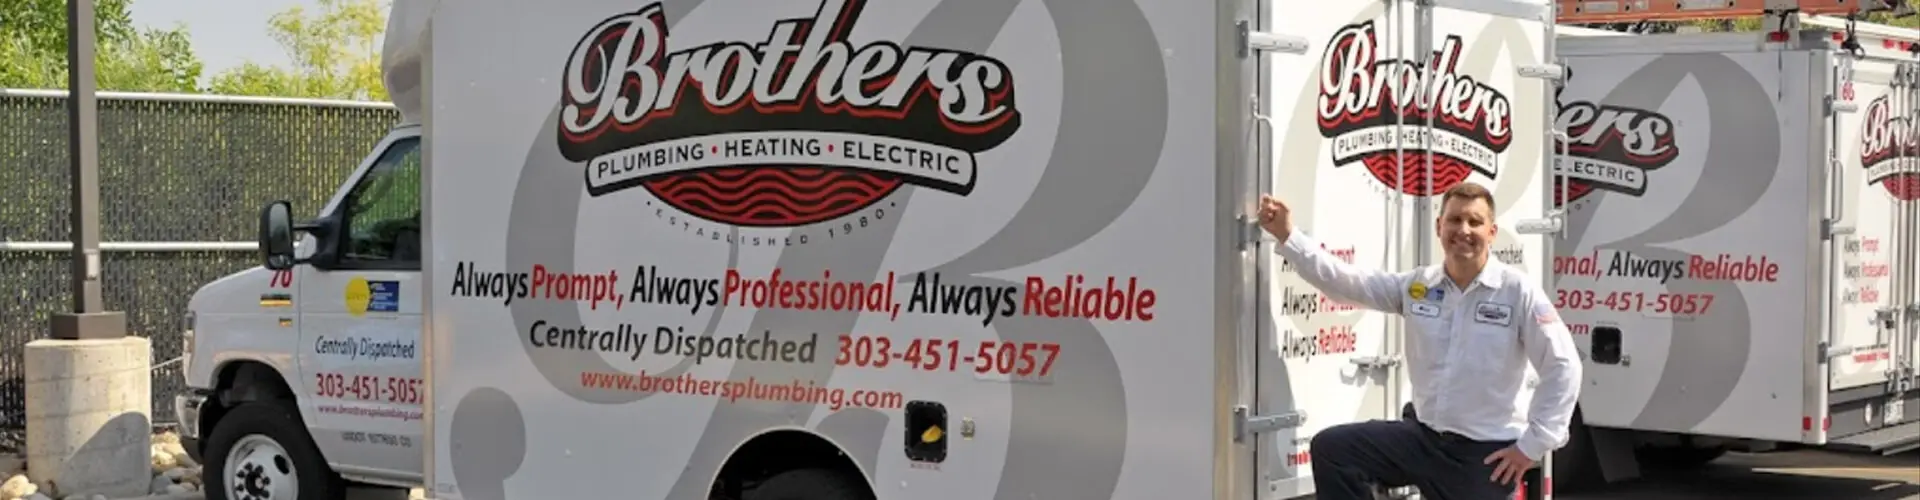 https://www.brothersplumbing.com/wp-content/uploads/truck-banner.jpg.webp